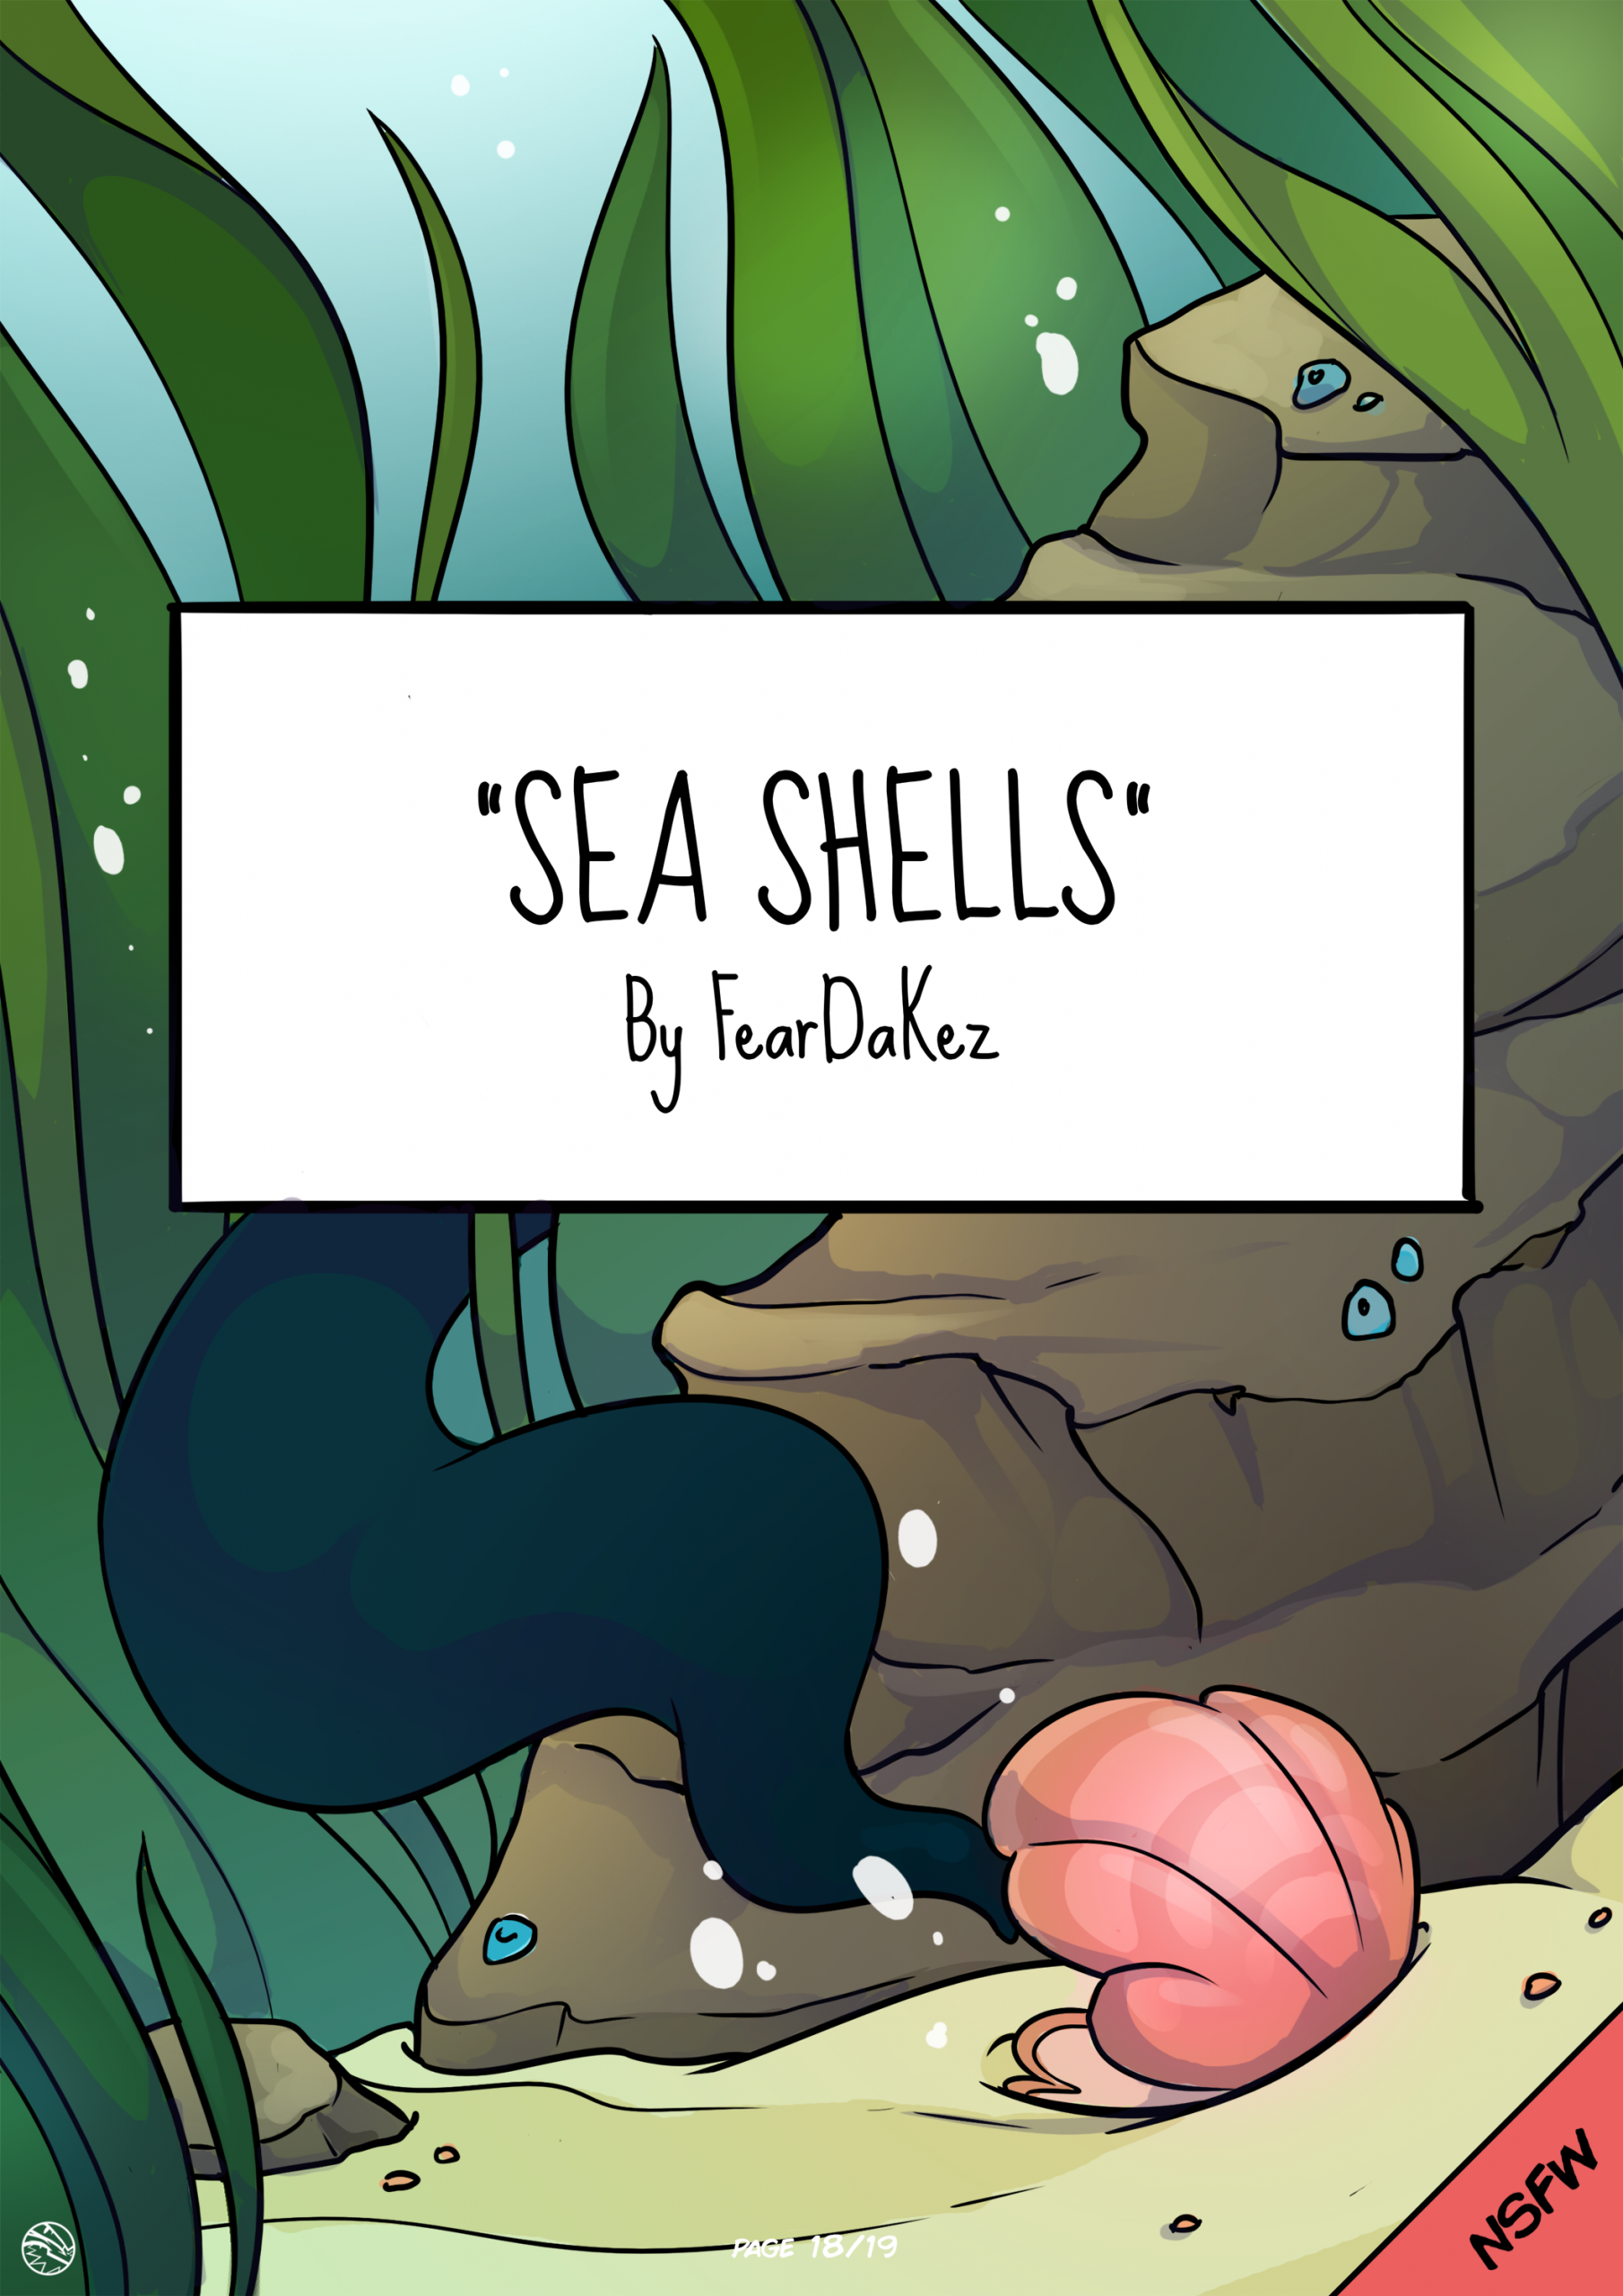 Sea shells porn comic picture 1.